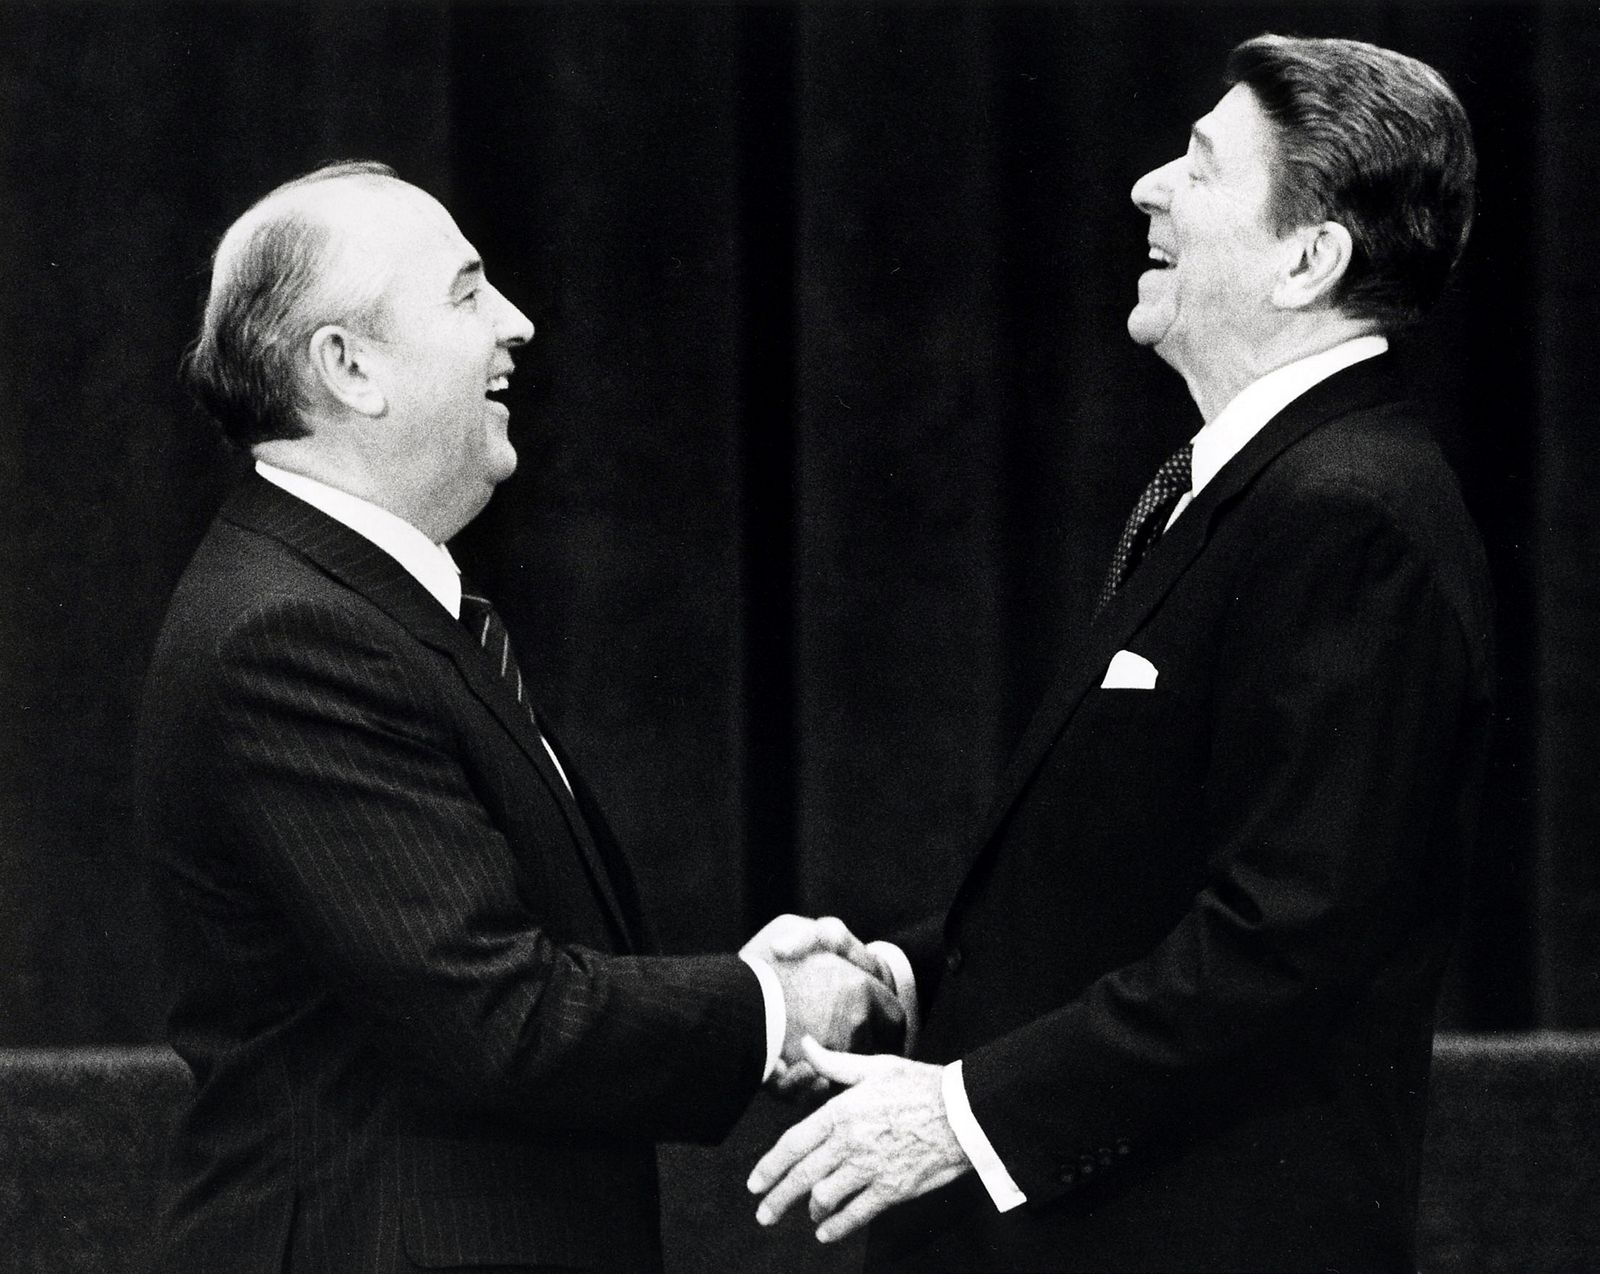 جانب من لقاء الرئيس الأميركي رونالد ريغن والزعيم السوفياتي ميخائيل غورباتشيف في جنيف. 21 نوفمبر 1985. - Reuters